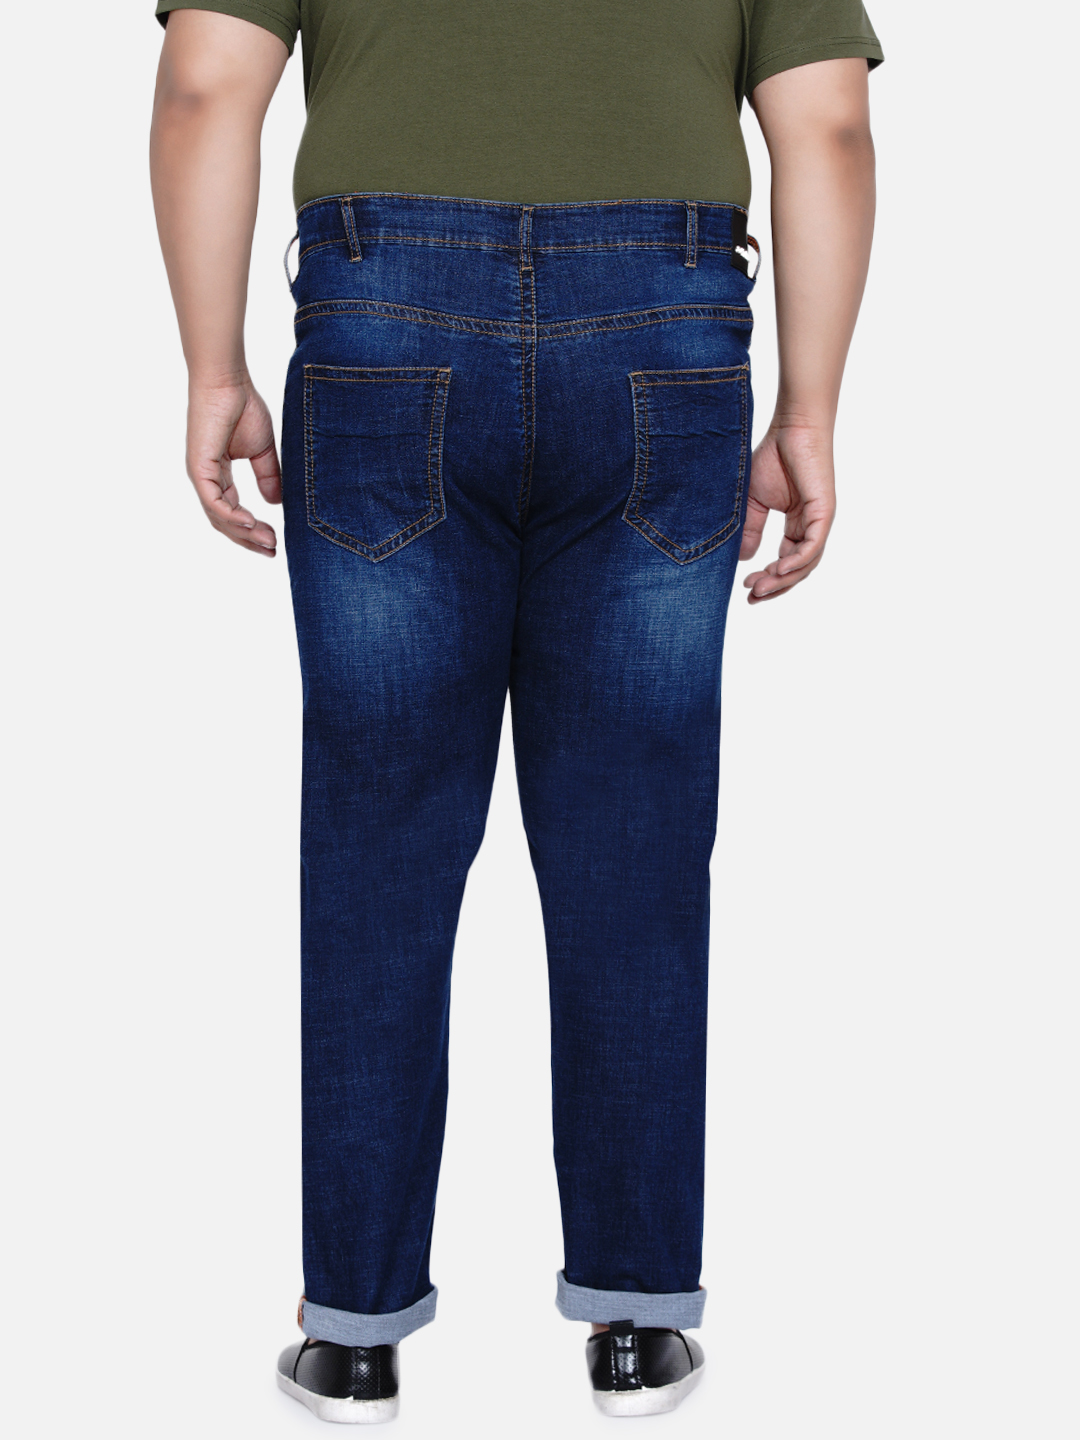 bottomwear/jeans/JPJ6033/jpj6033-5.jpg